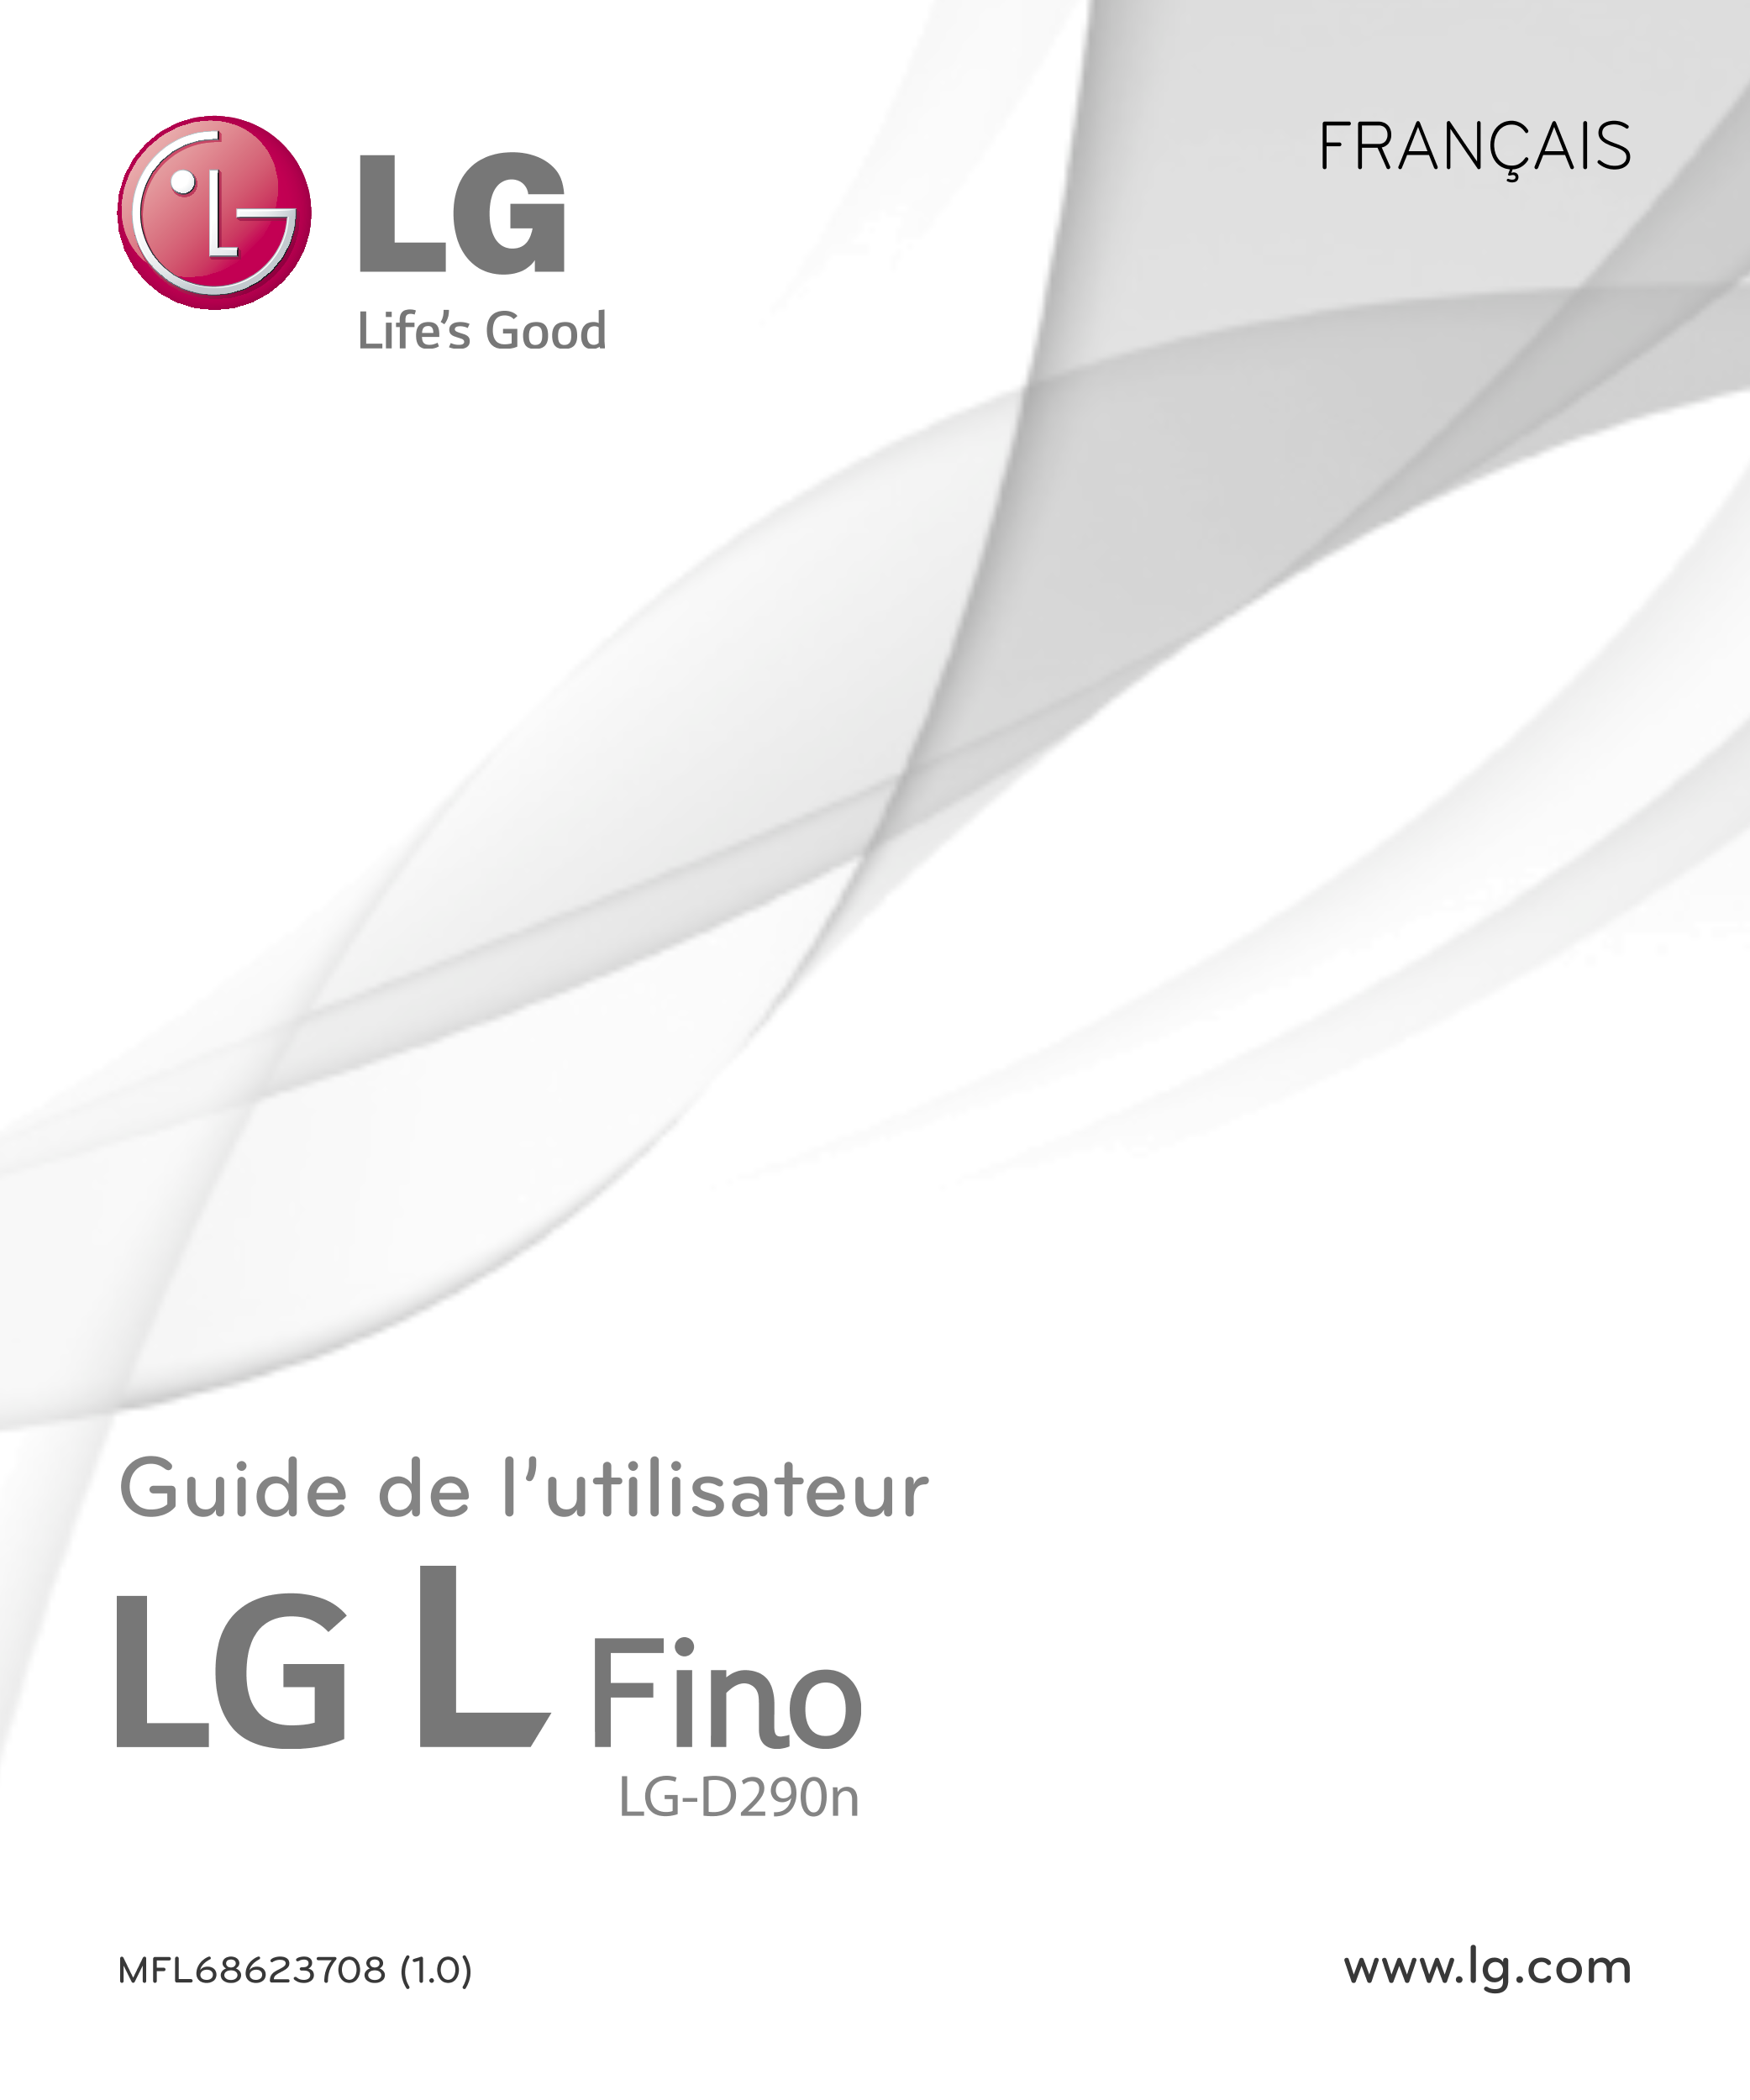 FRANÇAIS
Guide de l’utilisateur
LG-D290n
MFL68623708 (1.0) www.lg.com